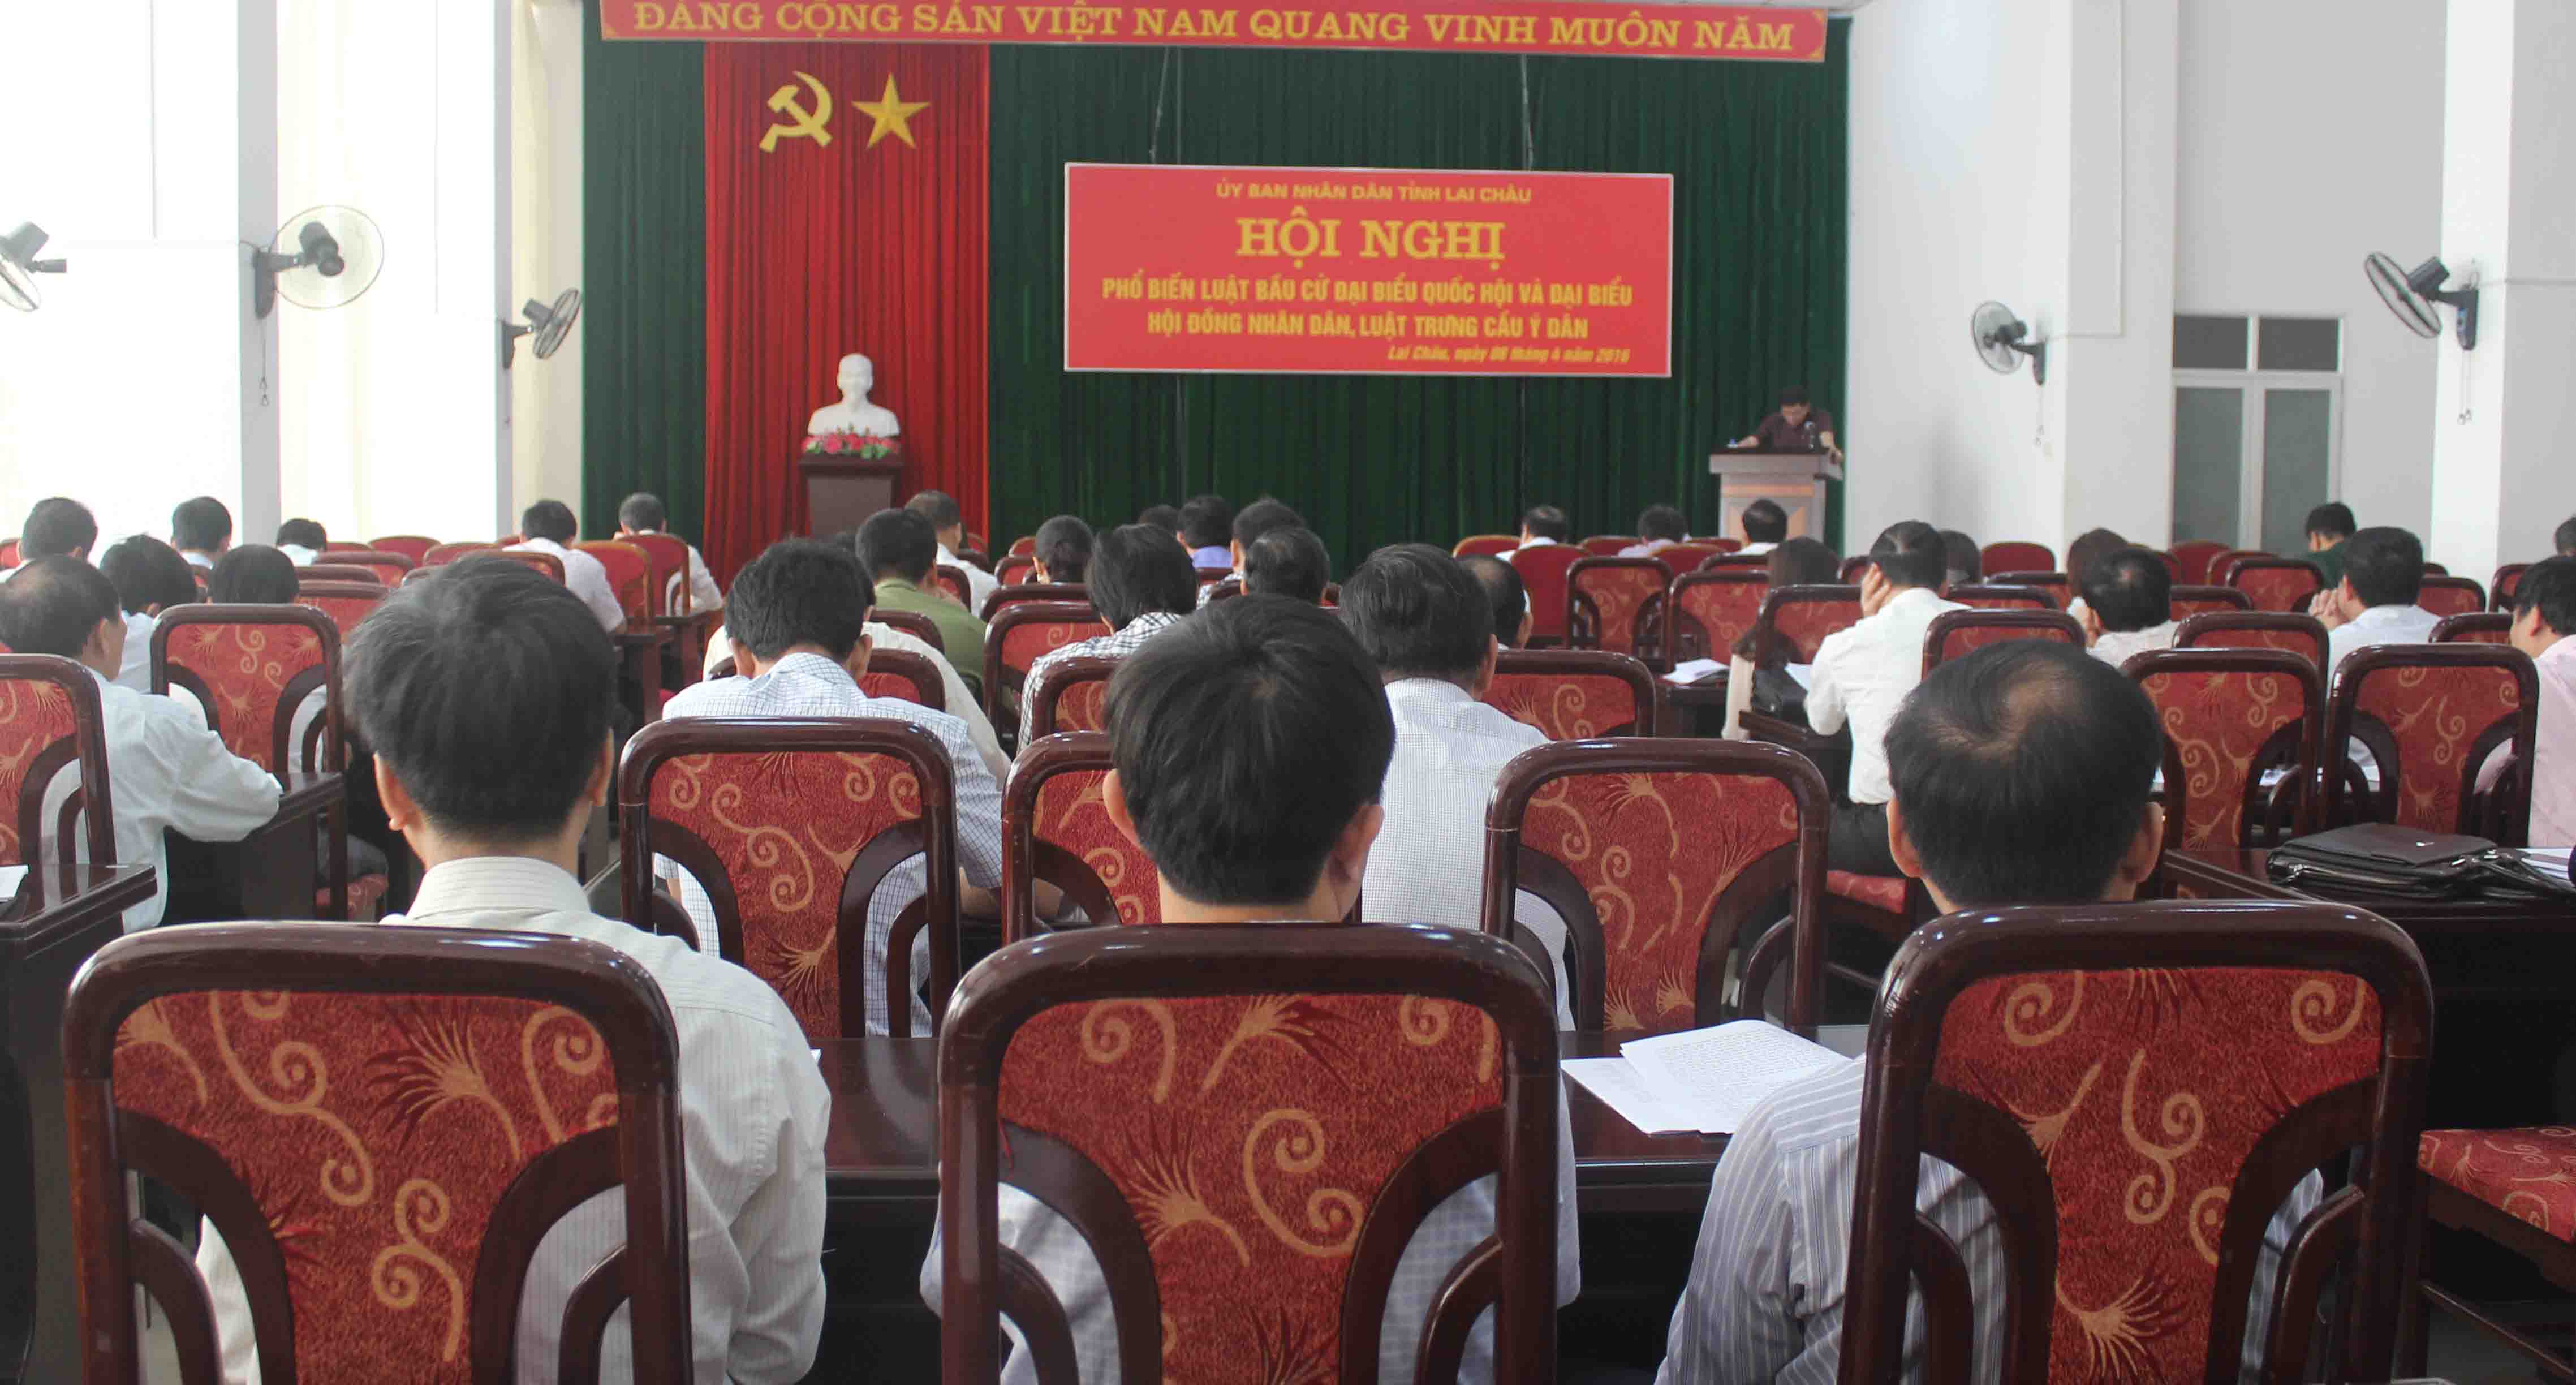 Tỉnh Lai Châu tổ chức Hội nghị phổ biến Luật bầu cử đại biểu Quốc hội và đại biểu HĐND, Luật trưng cầu ý dân 